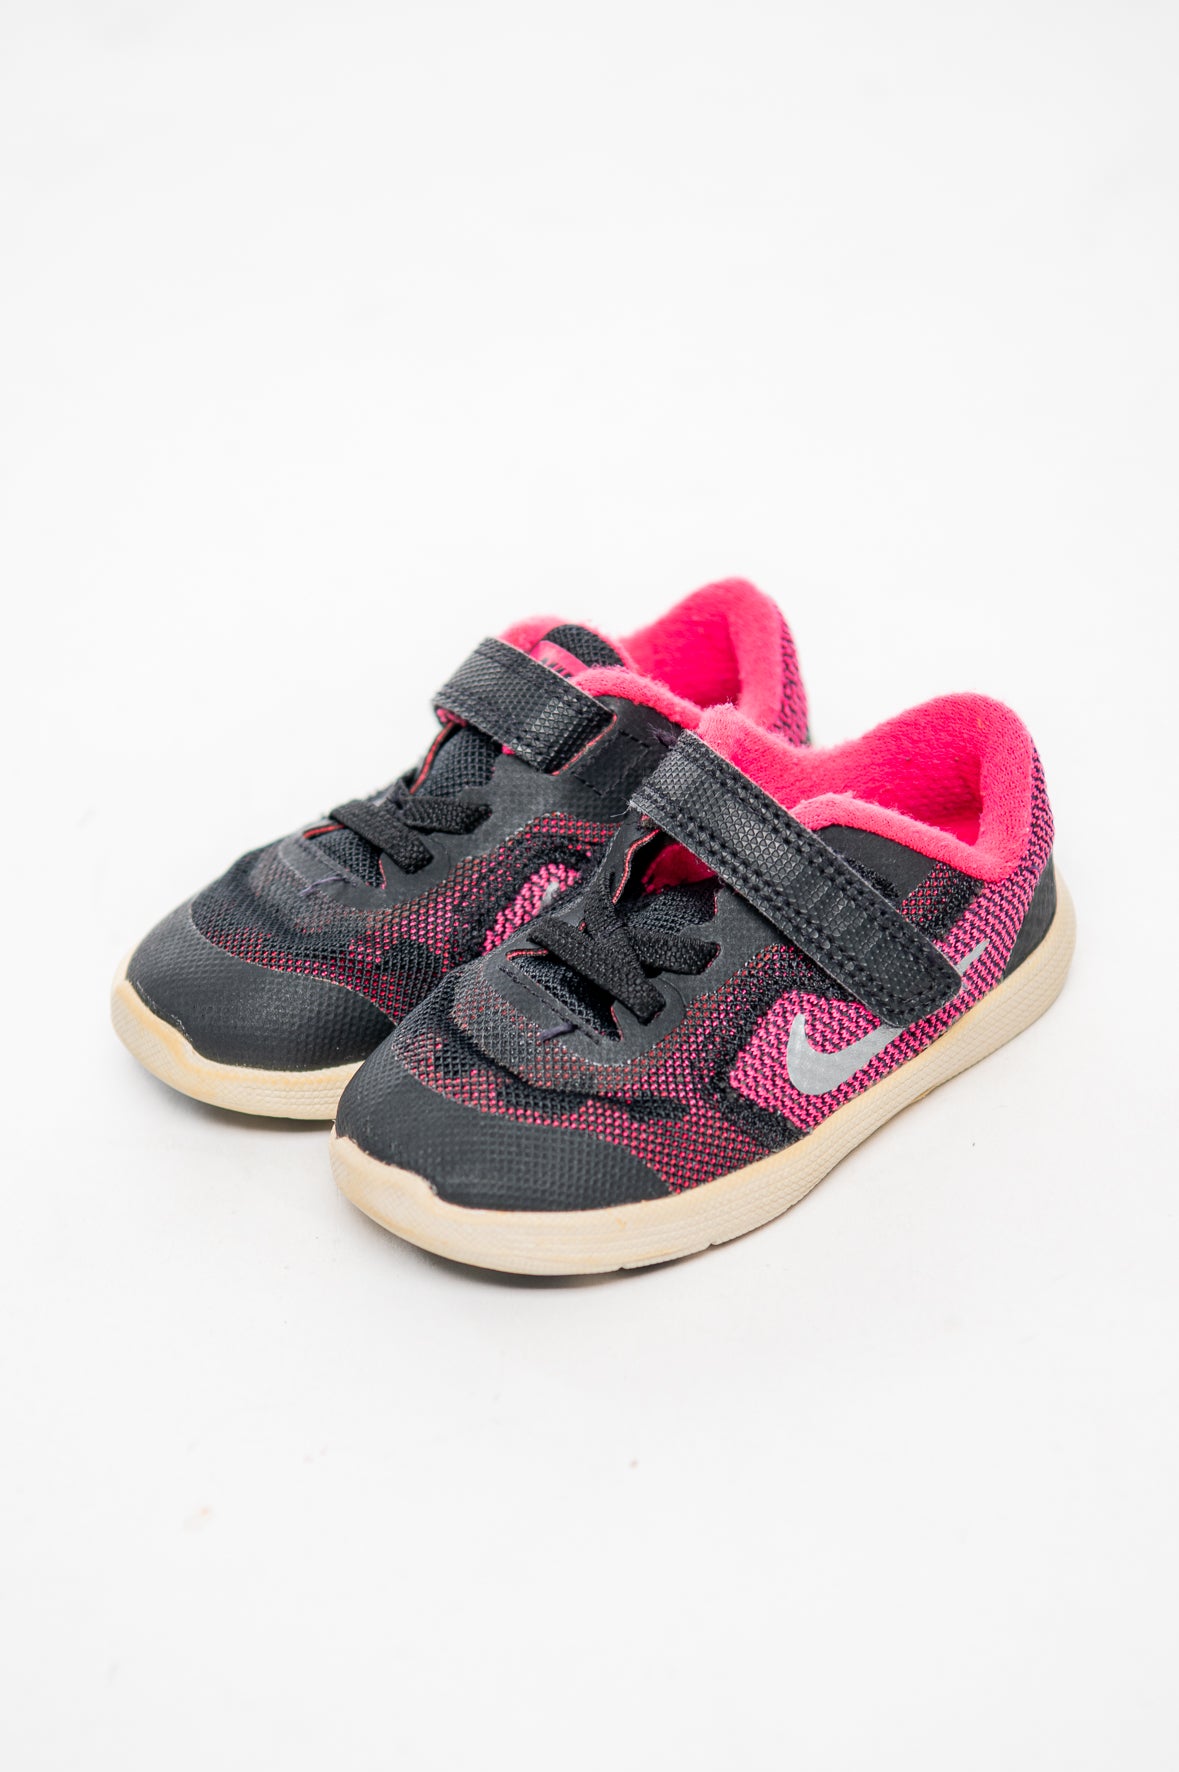 Kinder Schuhe Nike